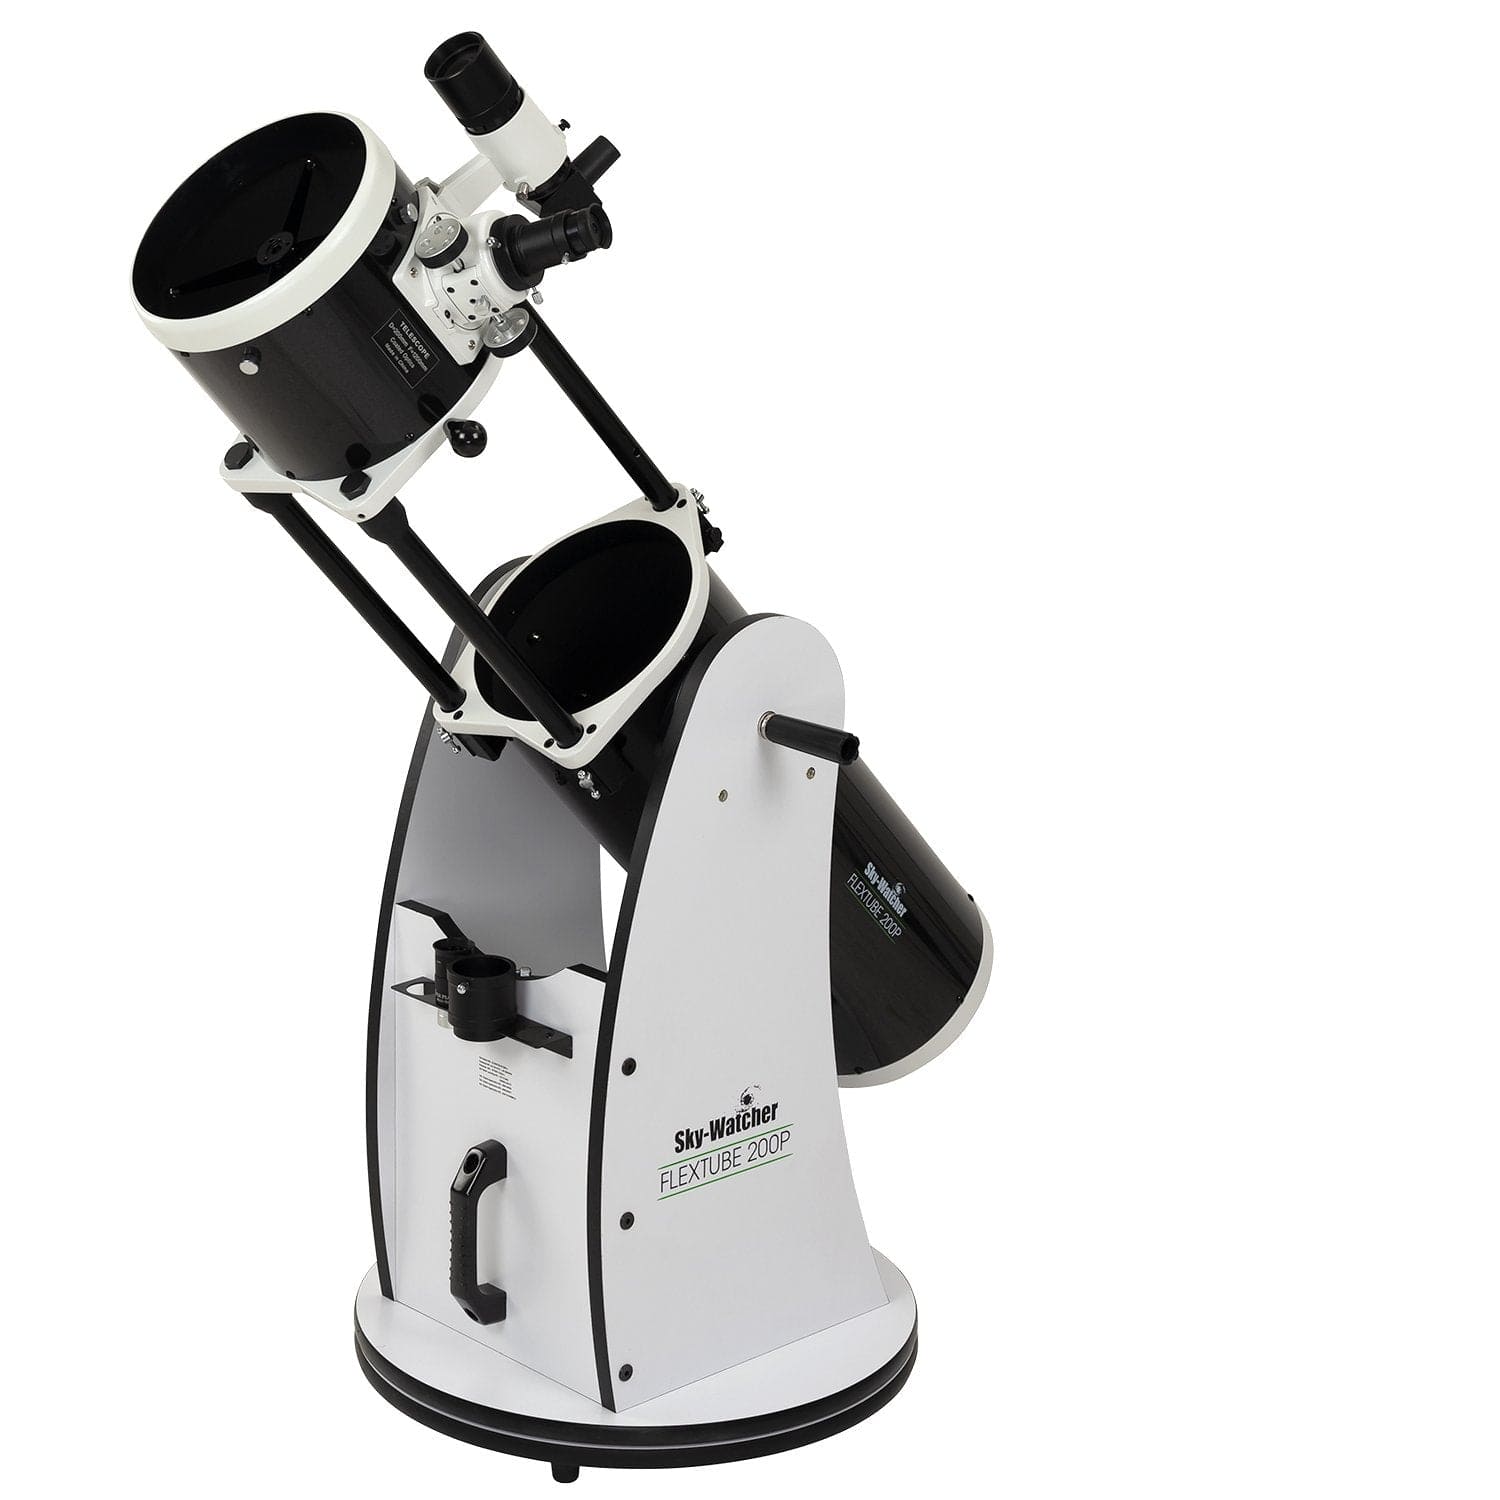 Sky-Watcher Telescope Sky-Watcher Flextube 200P 8" Collapsible Dobsonian - S11700